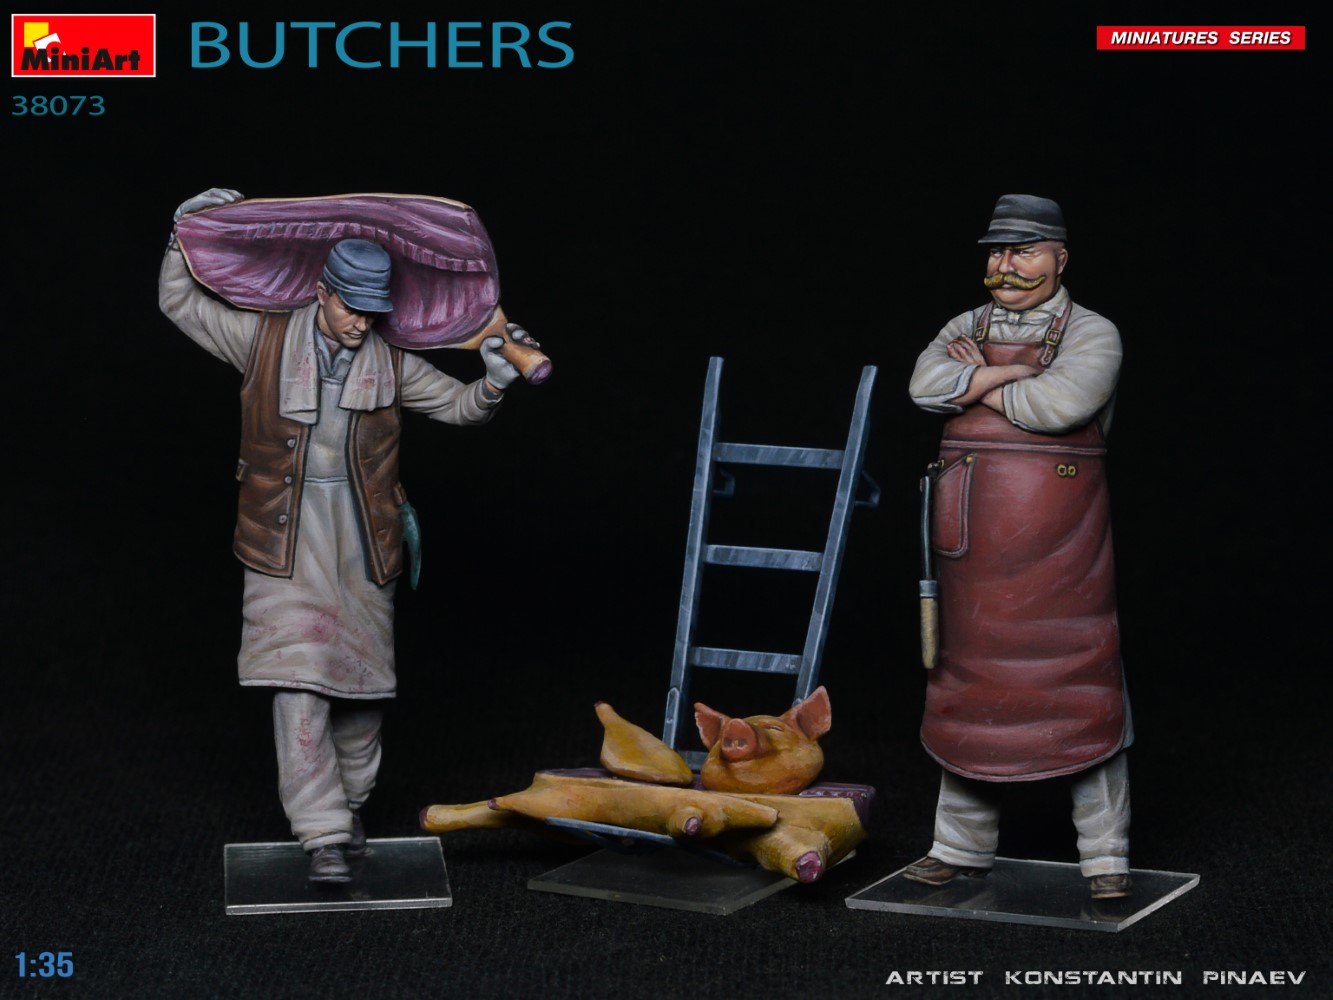 Miniart 1/35 Butchers # 38073